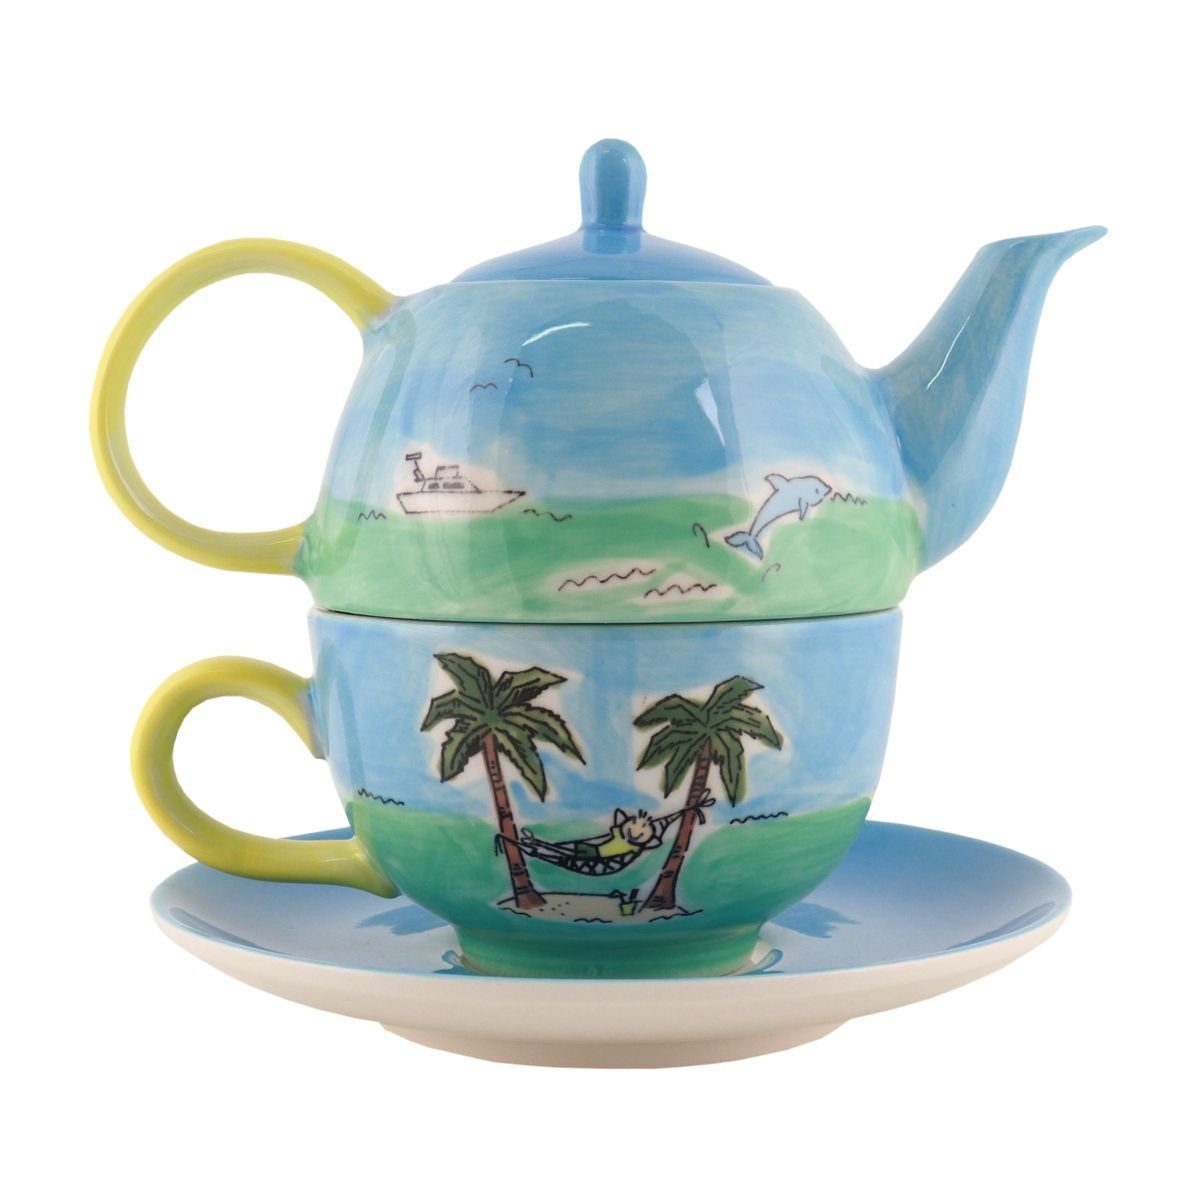 Reif die Tea Mila Teekanne Insel, for Mila für (Set) One Tee-Set Keramik